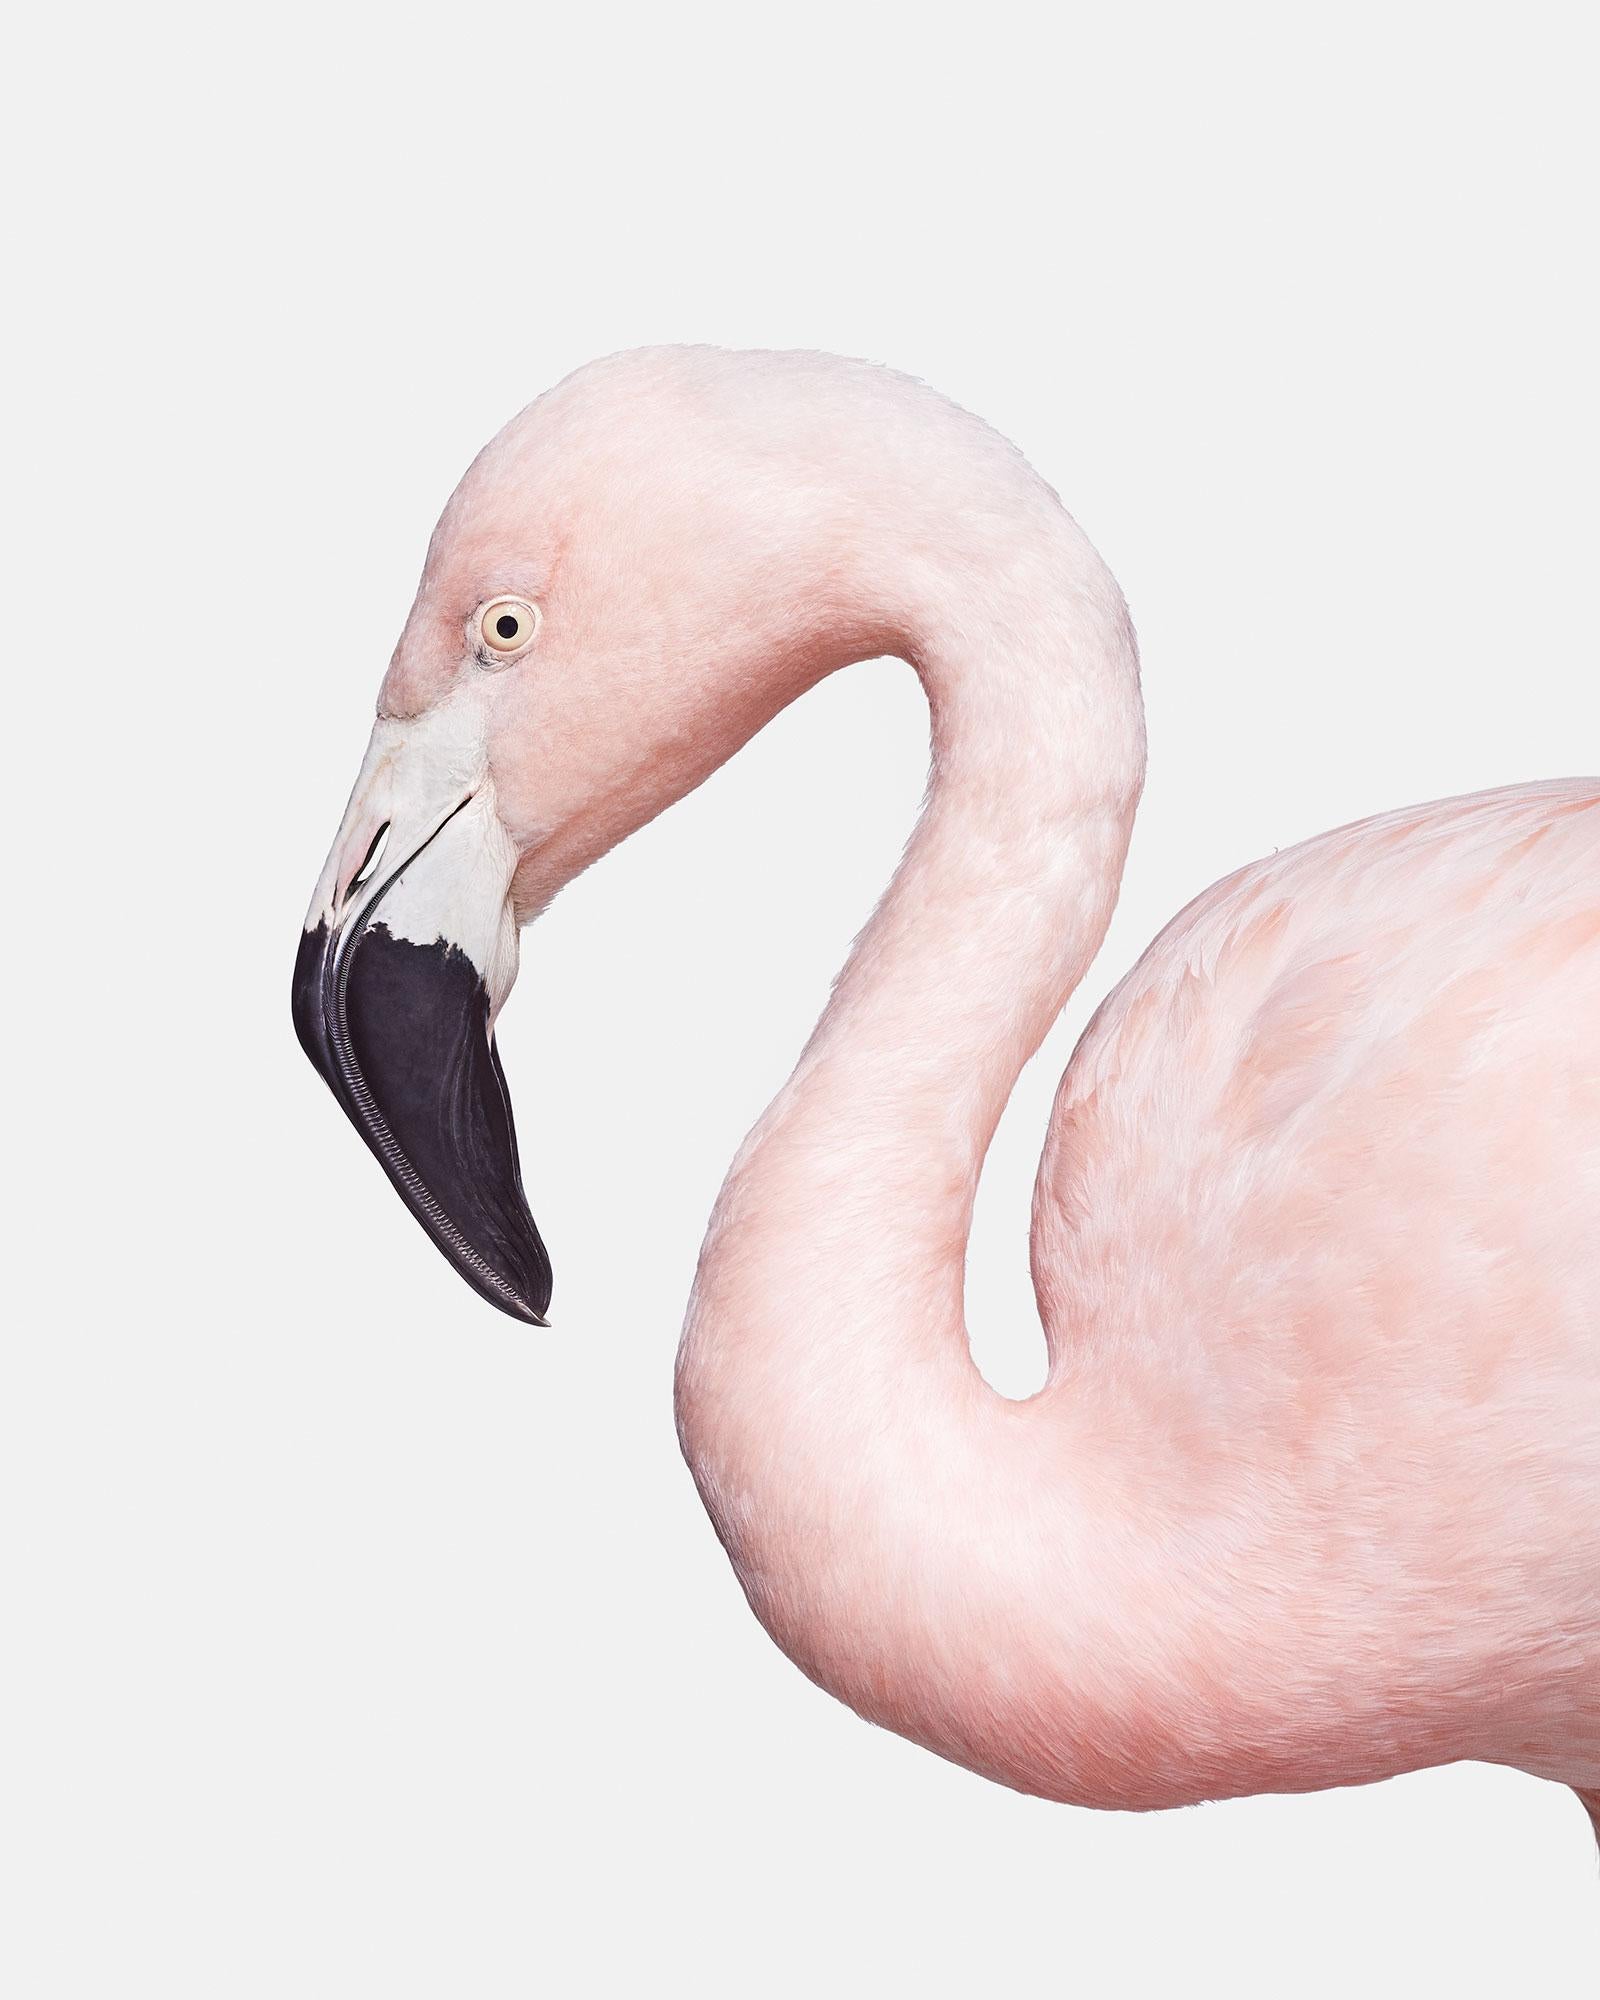 Flamingo No. 1
Tailles disponibles :
37.5" x 30", édition de 15 exemplaires
50" x 40", édition de 10
60" x 48", édition de 5

Alejandra :
Alejandra nous a fait tirer notre chapeau, Mère Nature ne manque jamais d'impressionner, et la couleur et la